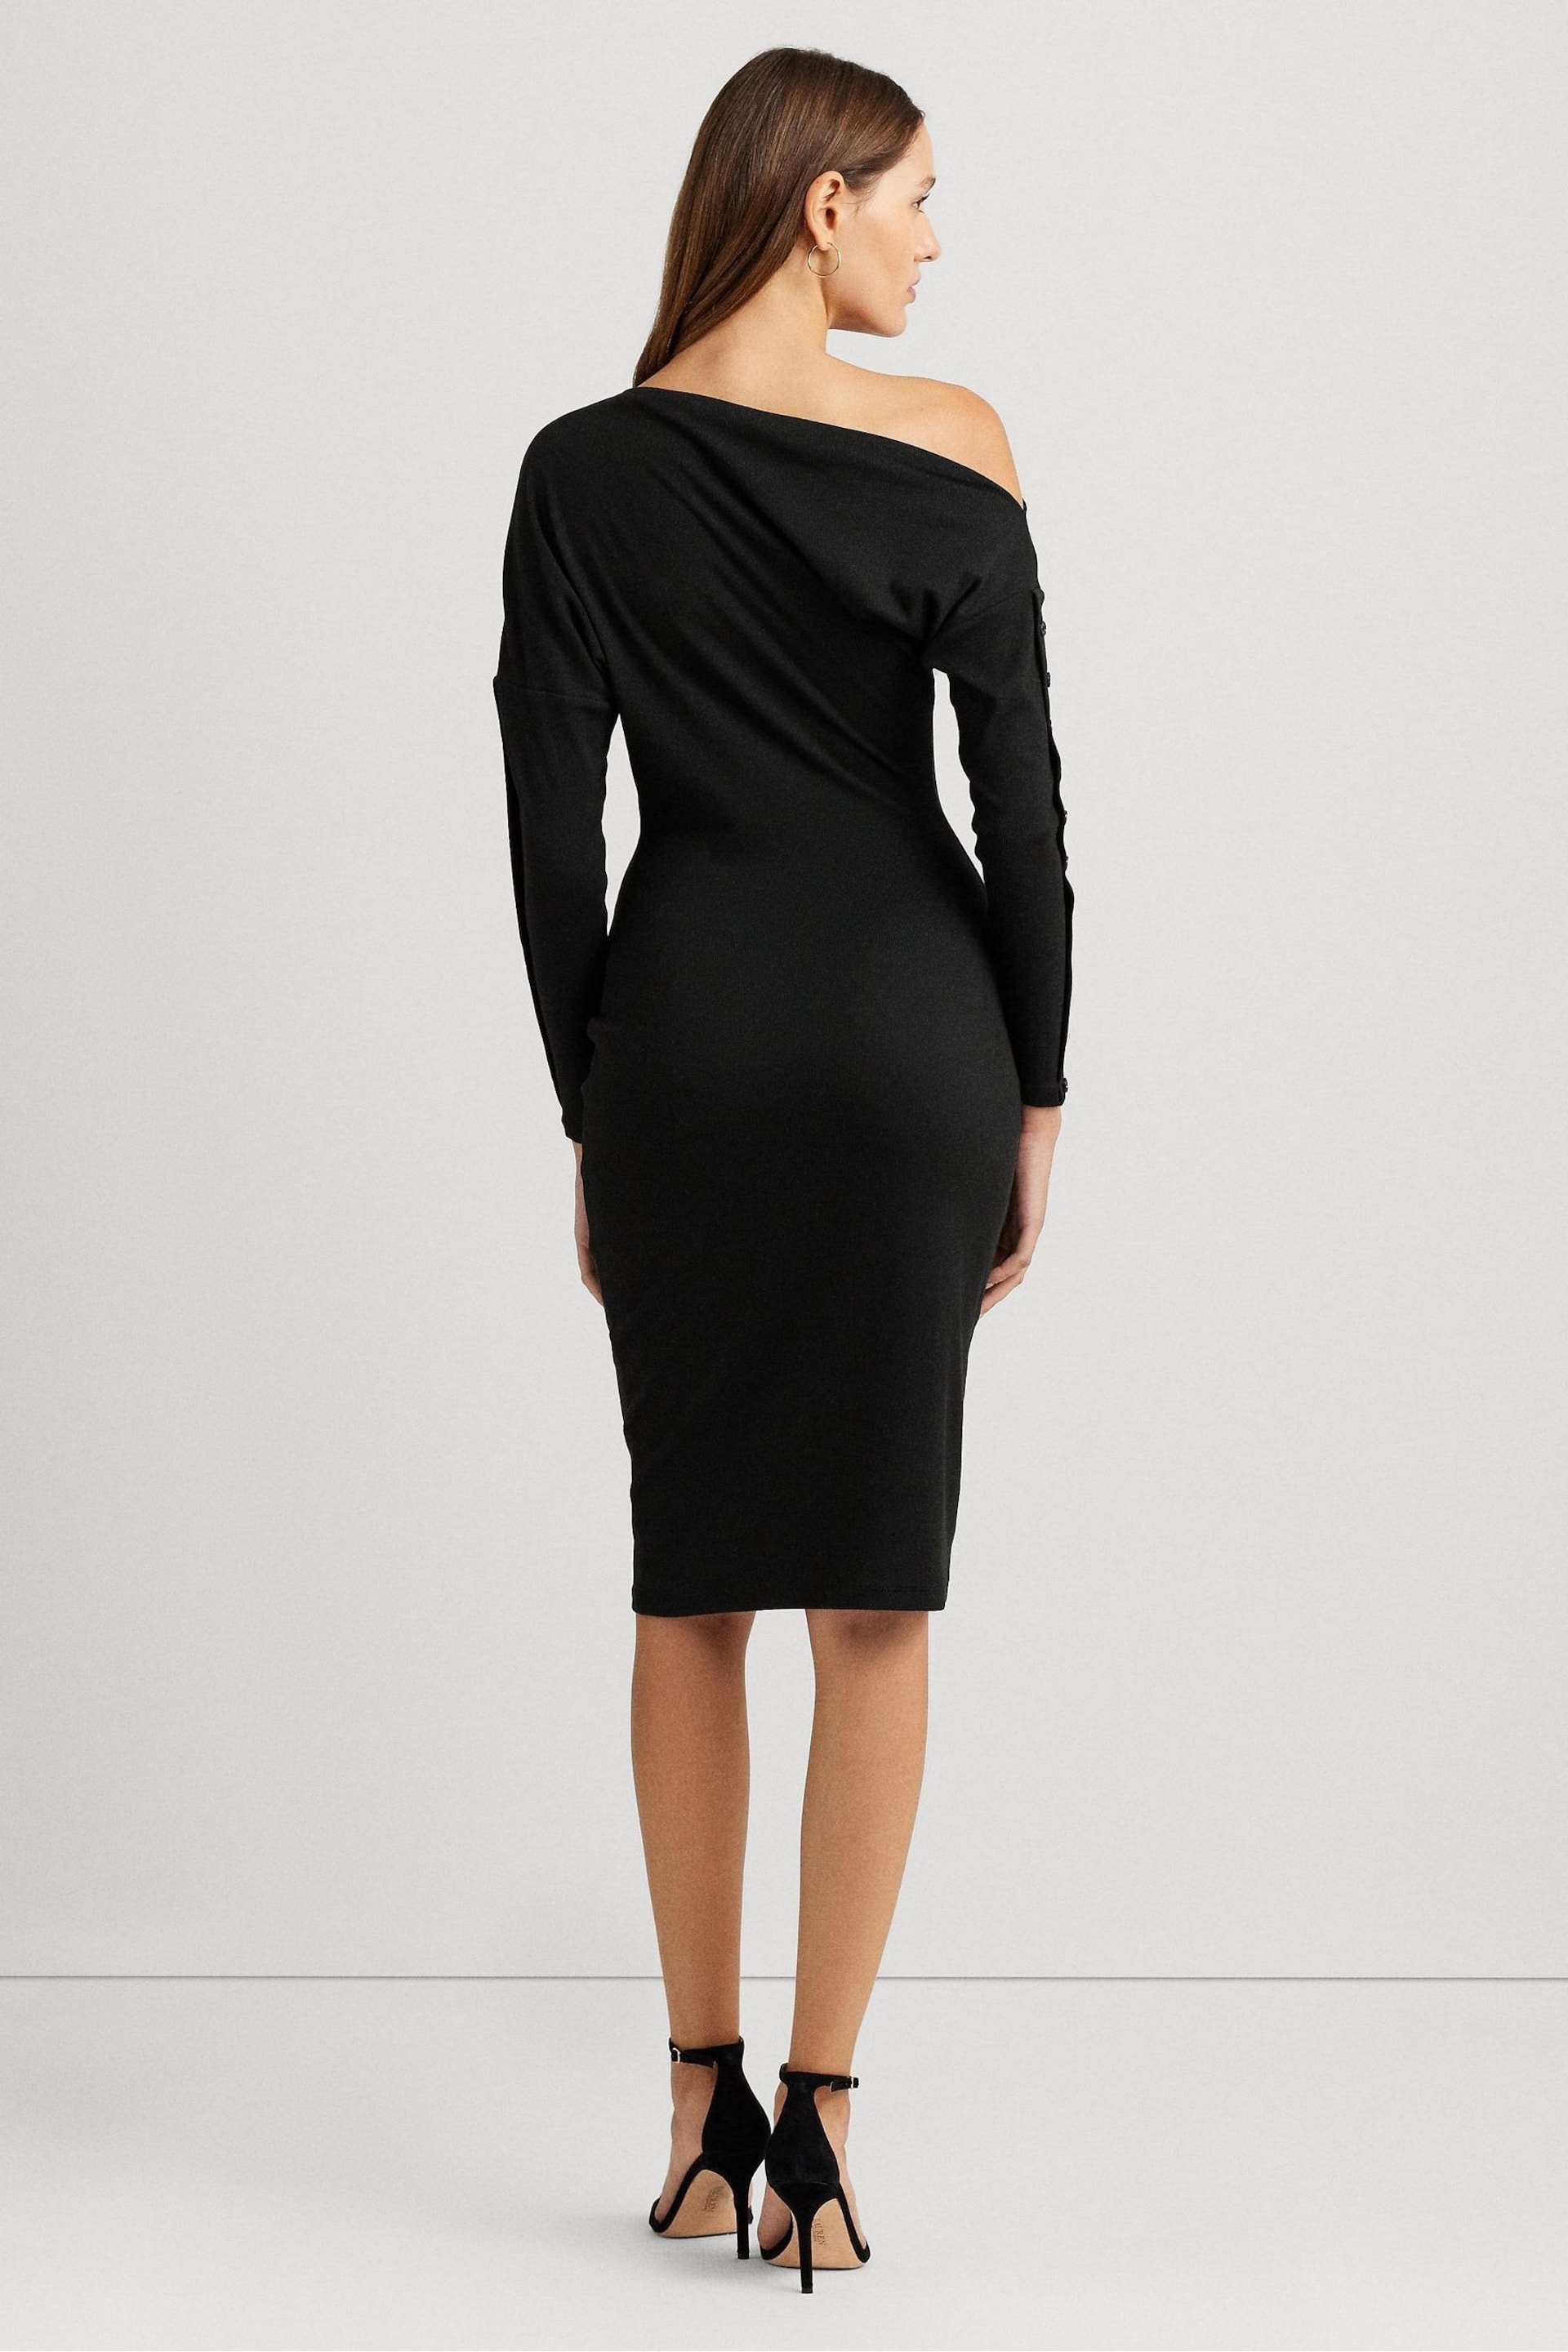 Lauren Ralph Lauren Black Yaslee Dress - Image 3 of 9